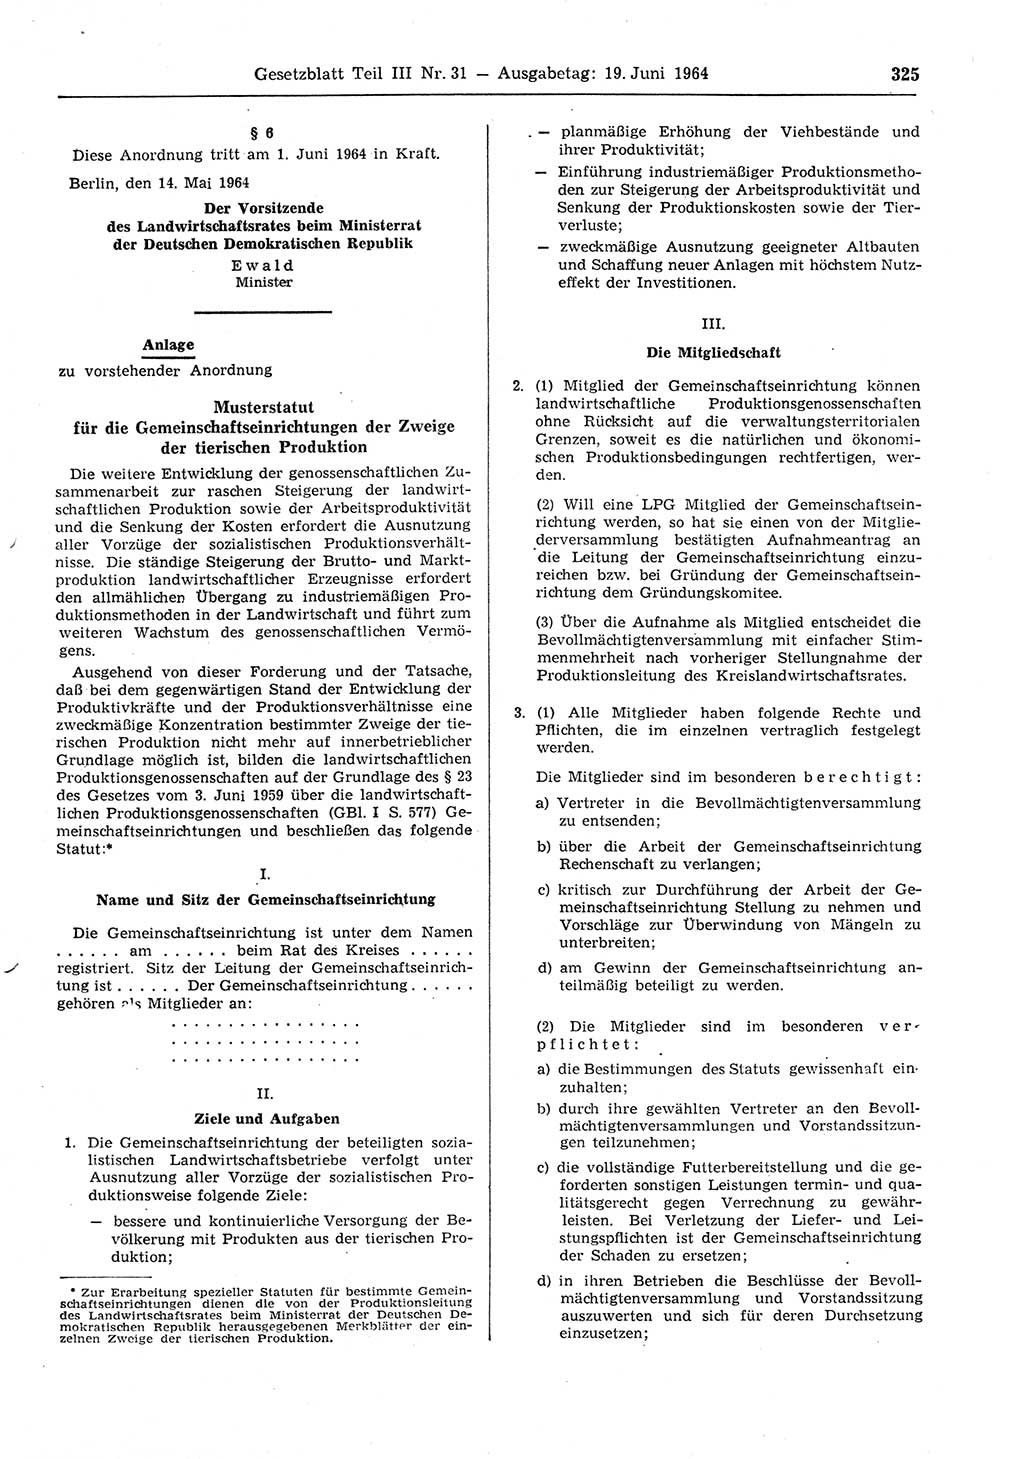 Gesetzblatt (GBl.) der Deutschen Demokratischen Republik (DDR) Teil ⅠⅠⅠ 1964, Seite 325 (GBl. DDR ⅠⅠⅠ 1964, S. 325)